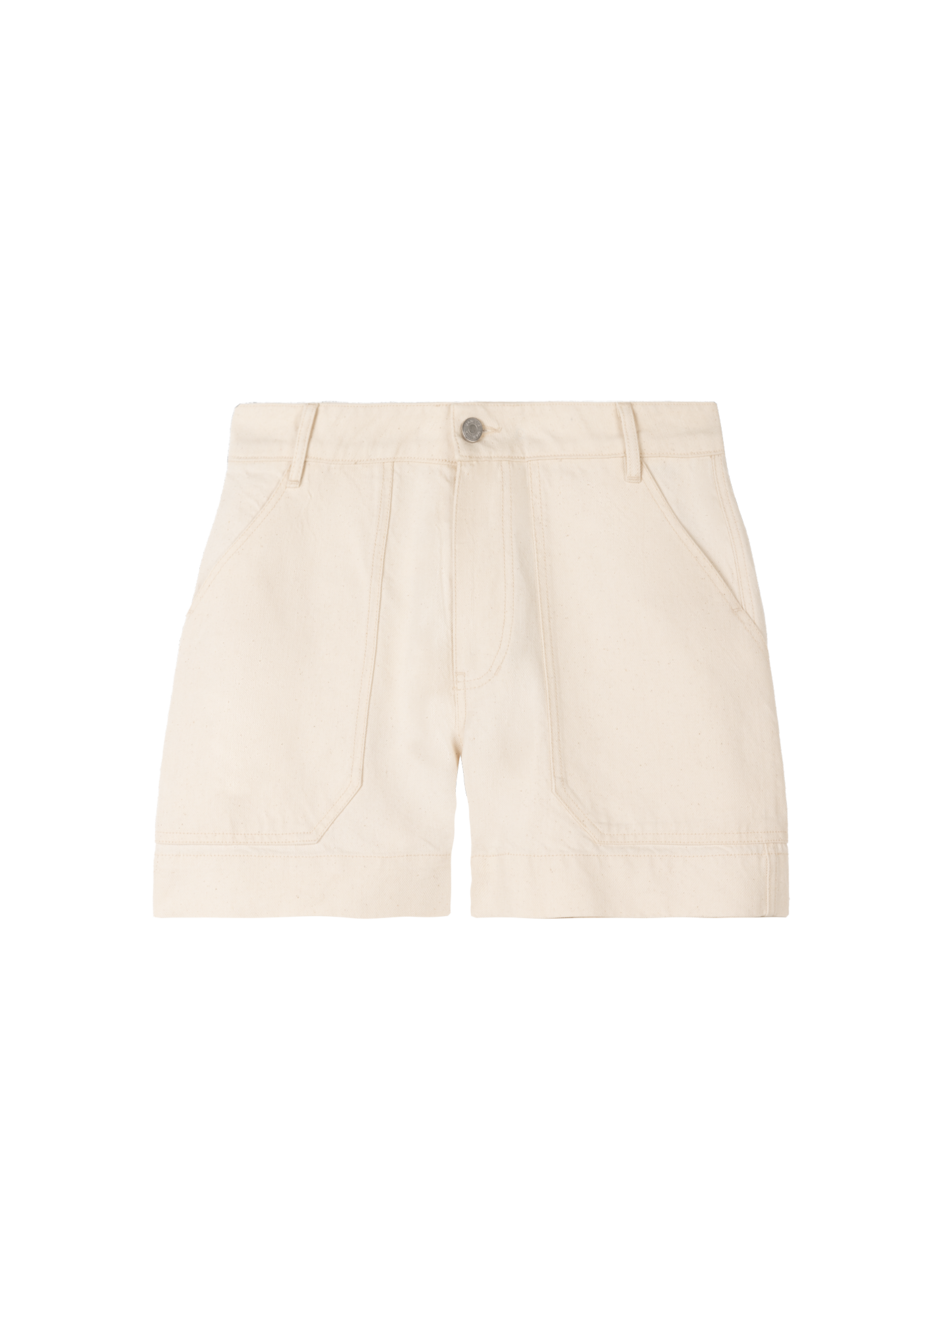 Aanbieding van Utility cotton shorts voor 99,95€ bij Vanilia